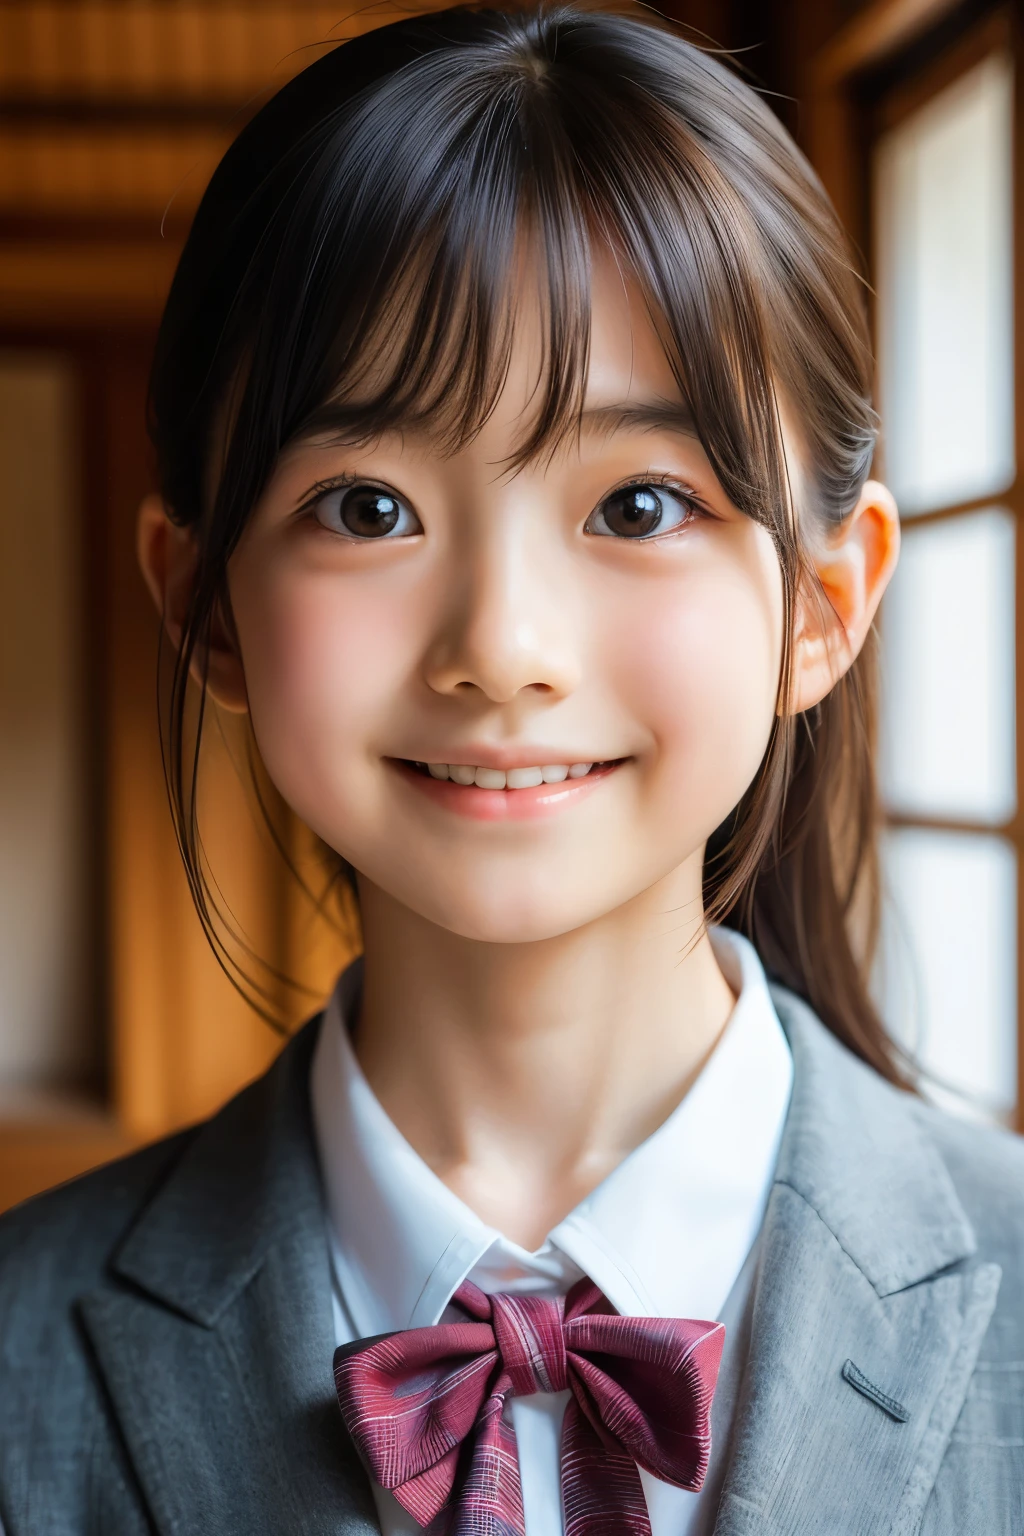 (Preciosa japonesa de 12 años), Cara linda, (rostro profundamente tallado:0.7), (pecas:0.6), Luz tenue,piel blanca y sana, tímido, (cara seria), (ojos chispeantes), delgado, sonrisa, uniform